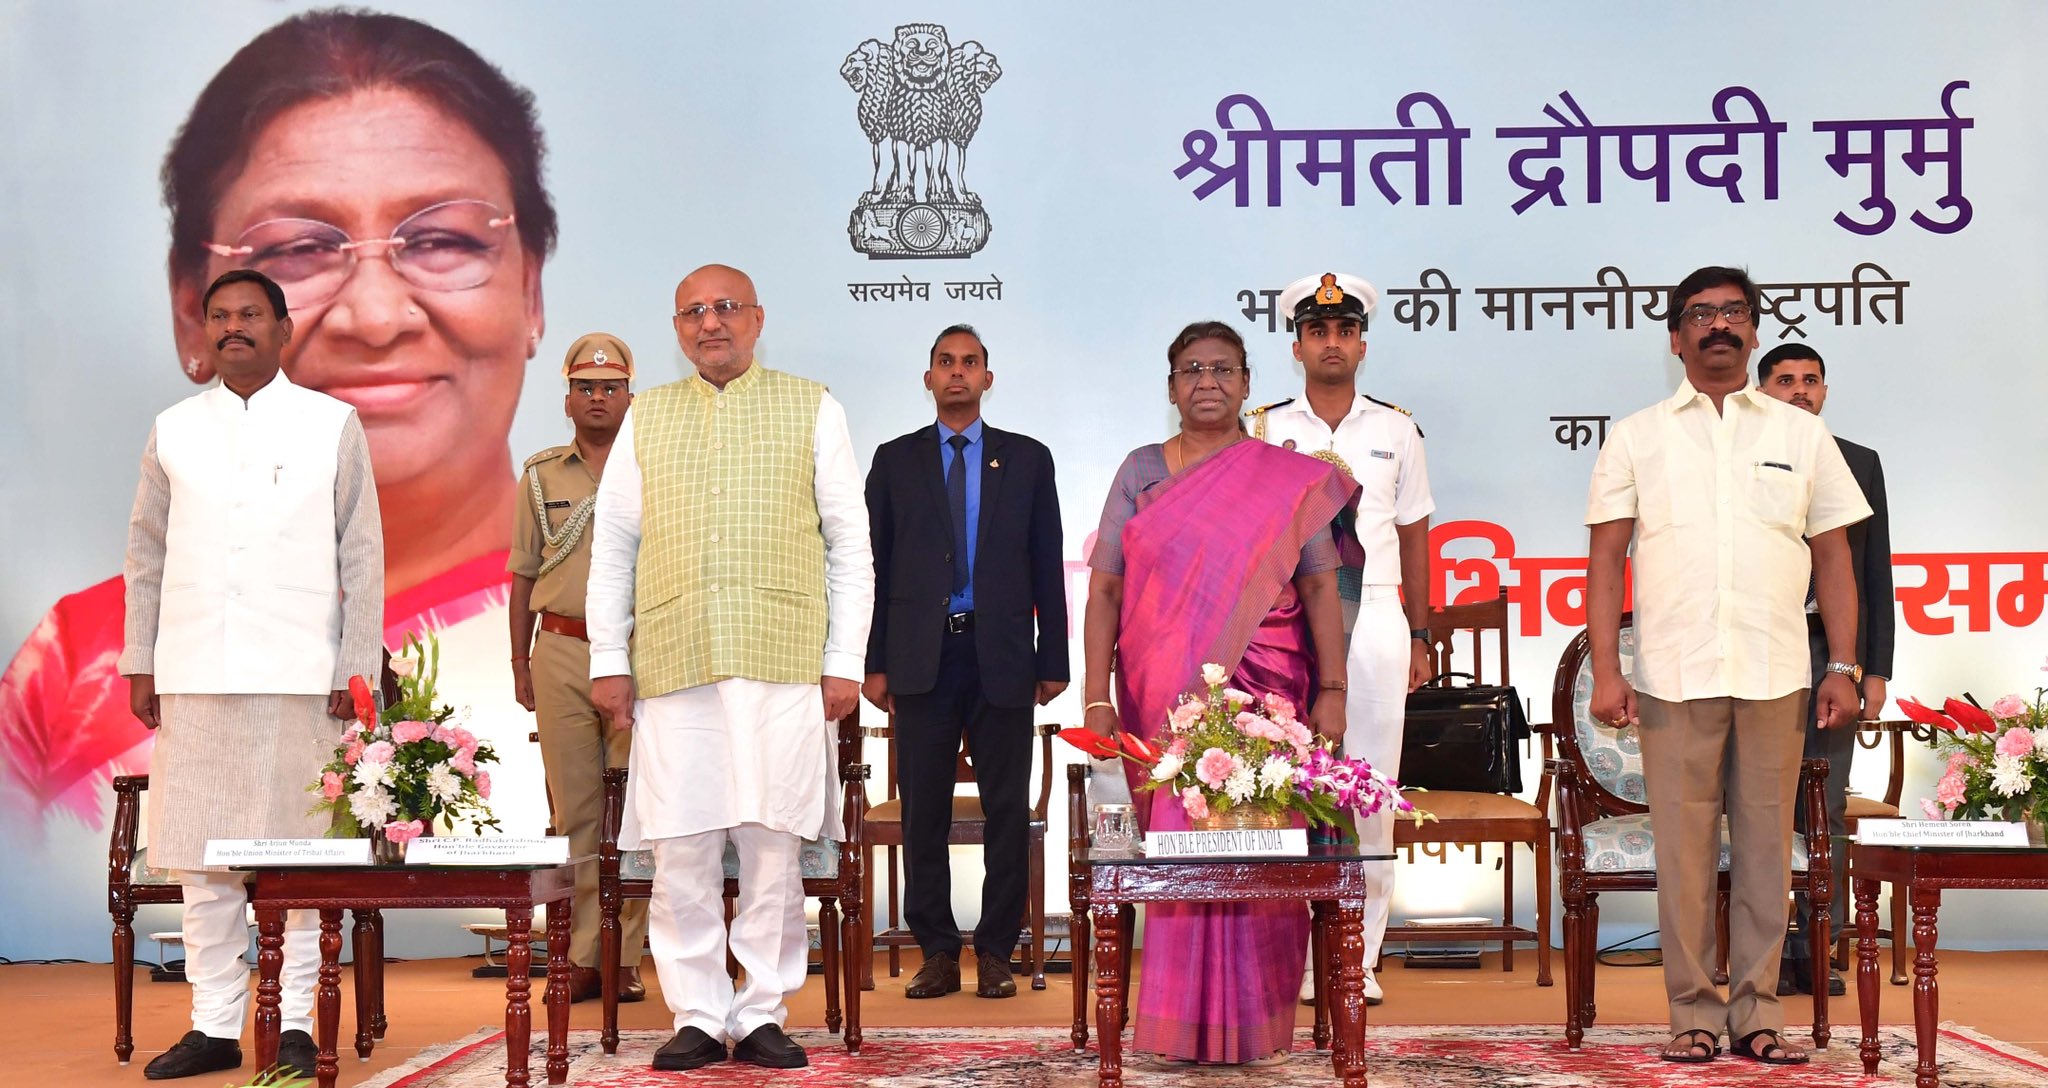 राष्ट्रपति द्रौपदी मुर्मू के सम्मान में राज भवन में सांस्कृतिक कार्यक्रम का हुआ आयोजन- Cultural program organized at Raj Bhavan in honor of President Draupadi Murmu